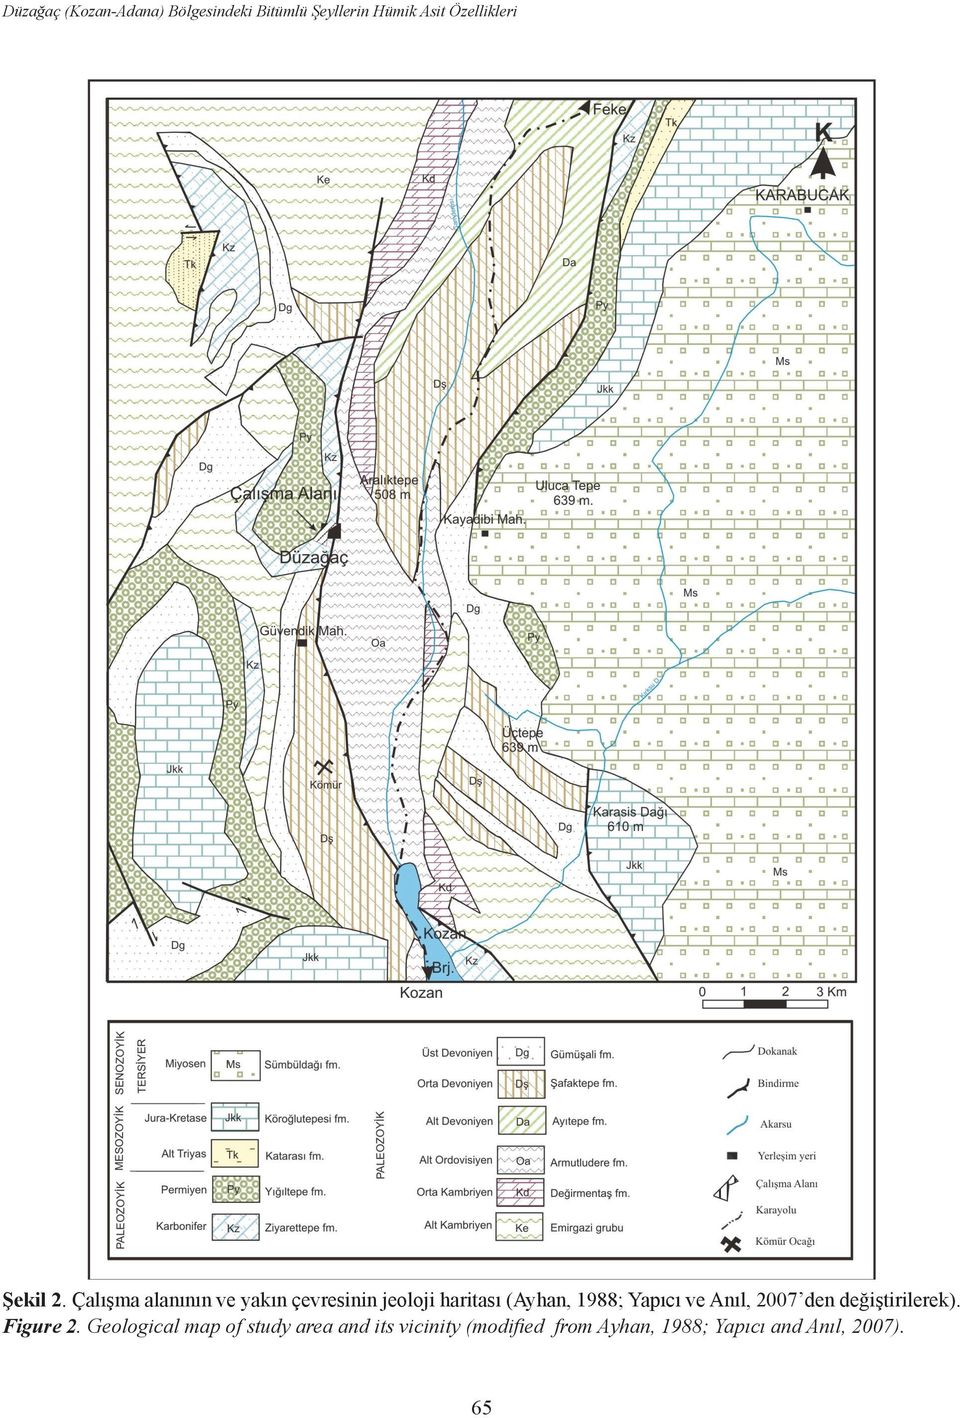 Çalışma alanının ve yakın çevresinin jeoloji haritası (Ayhan, 1988; Yapıcı